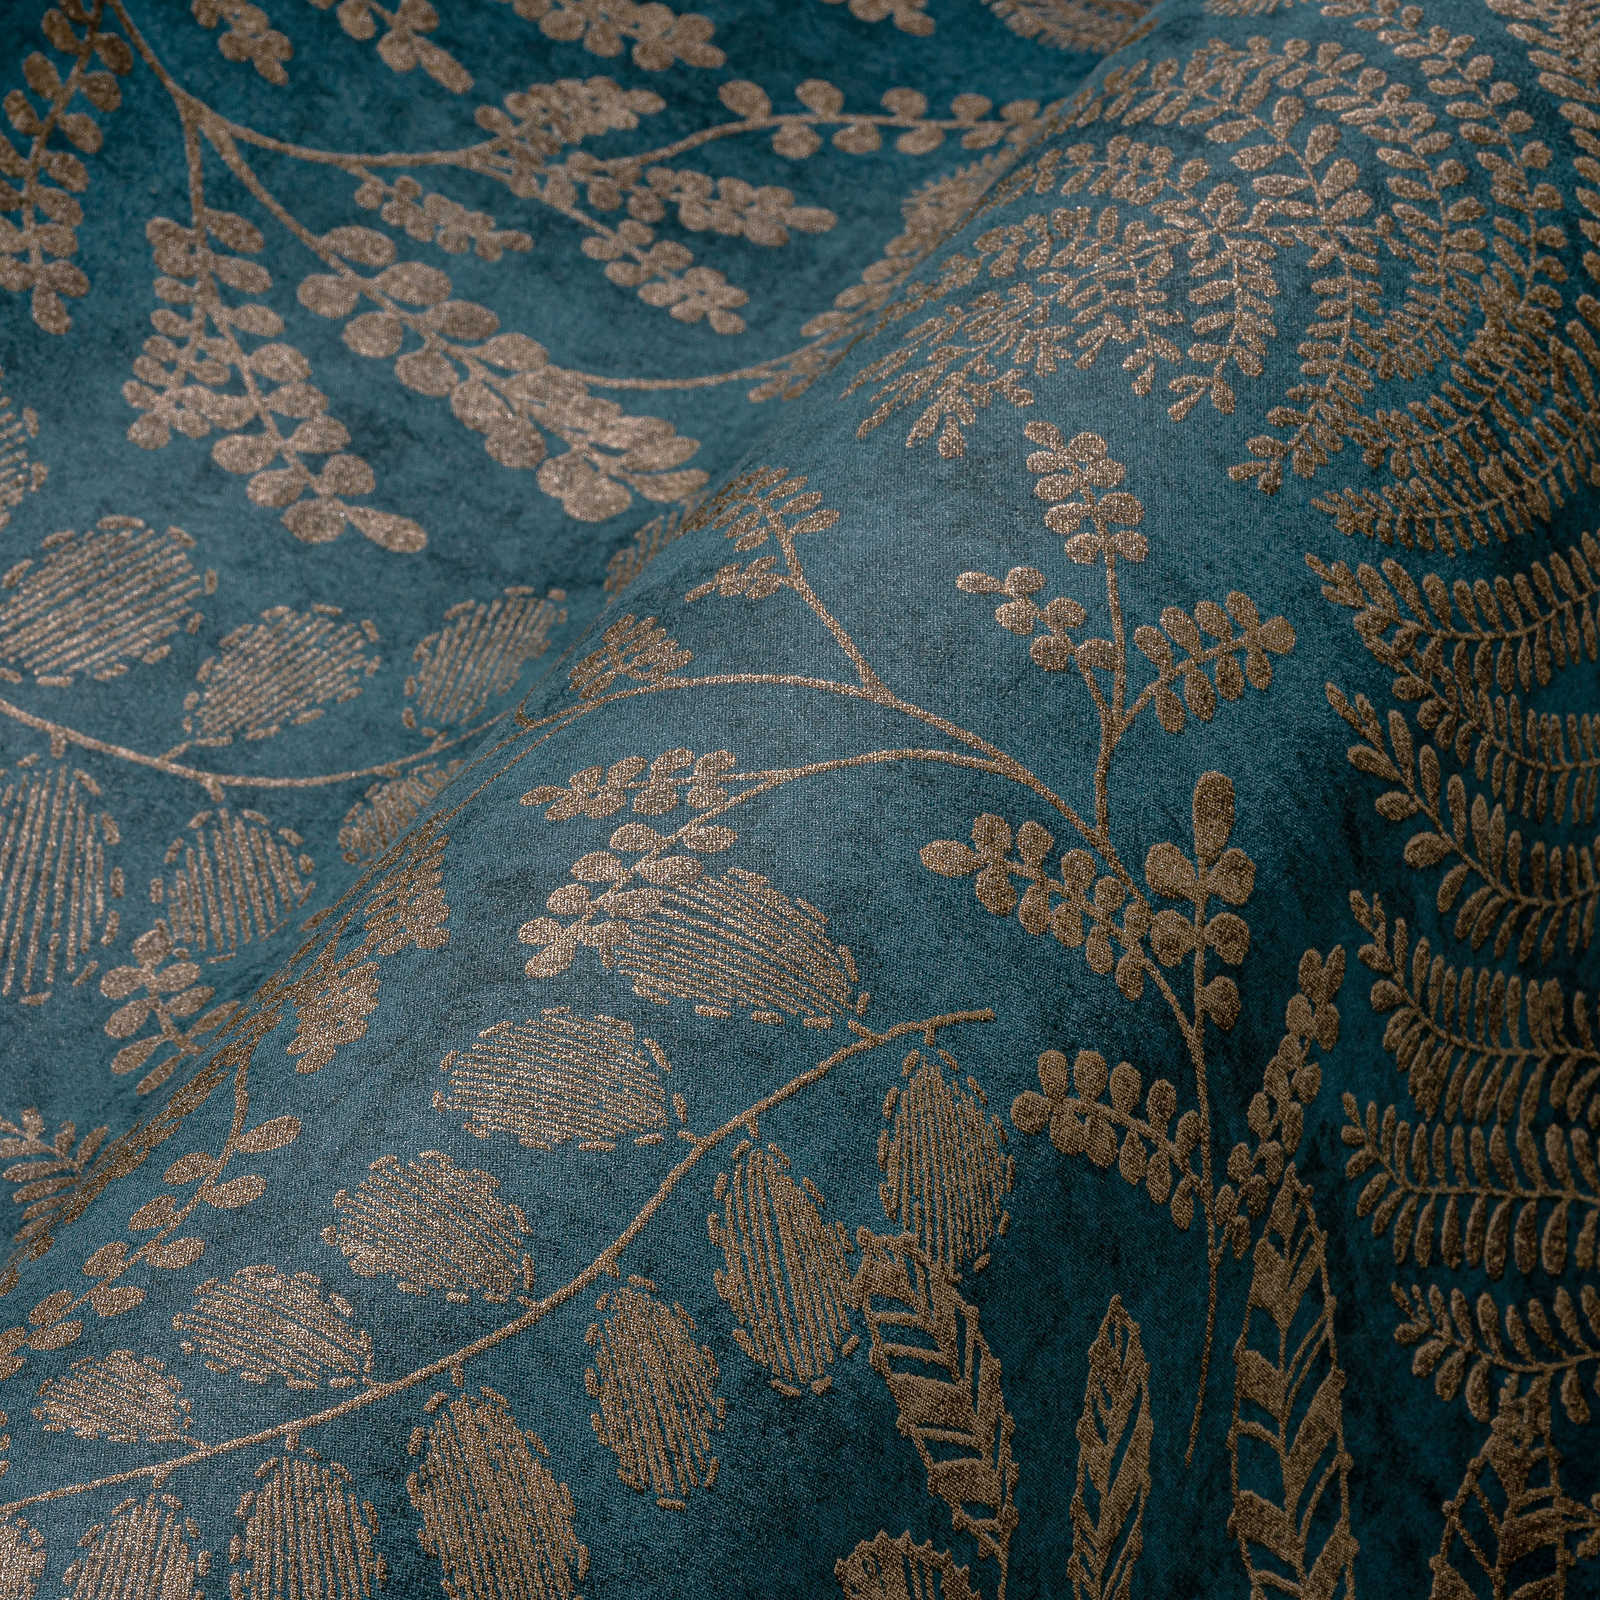             Blauw behang met goud design in boho stijl
        